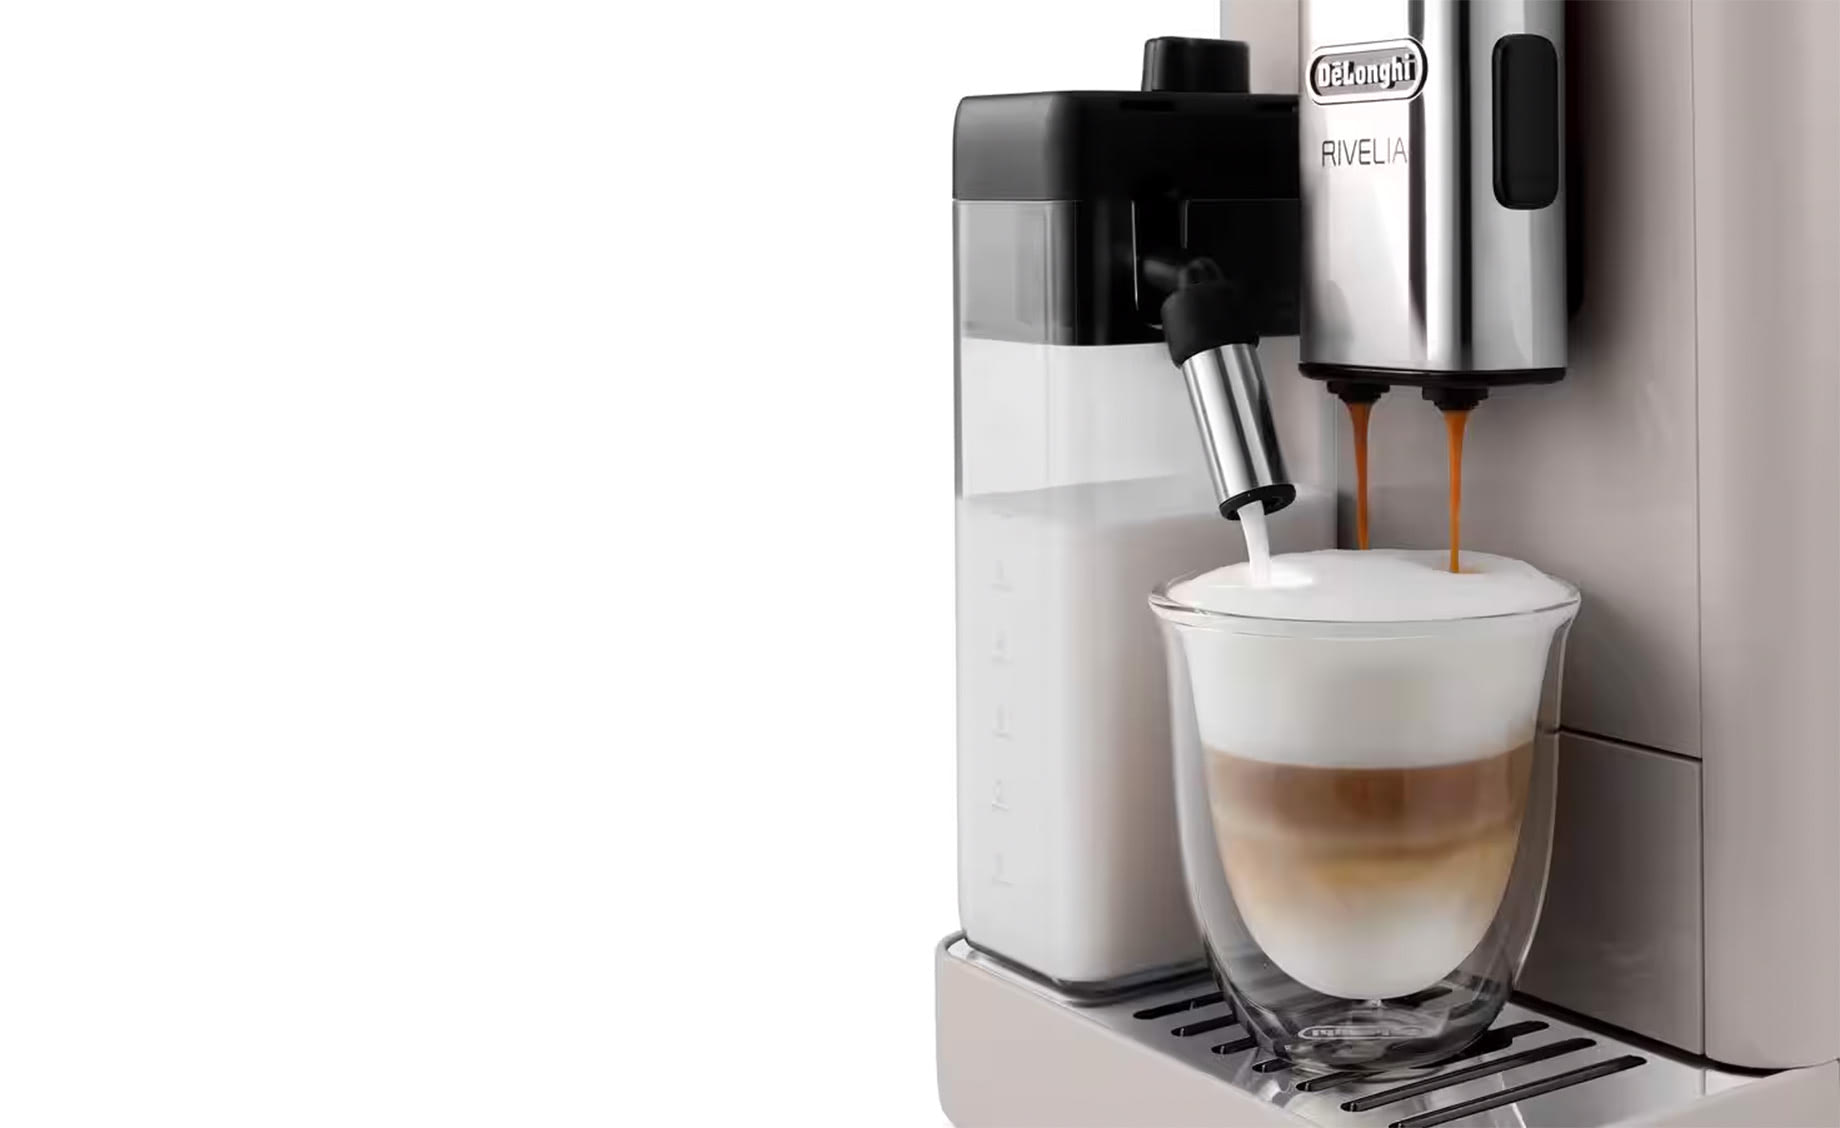 De Longhi Rivelia EXAM440.55.BG  aparat za espresso kafu